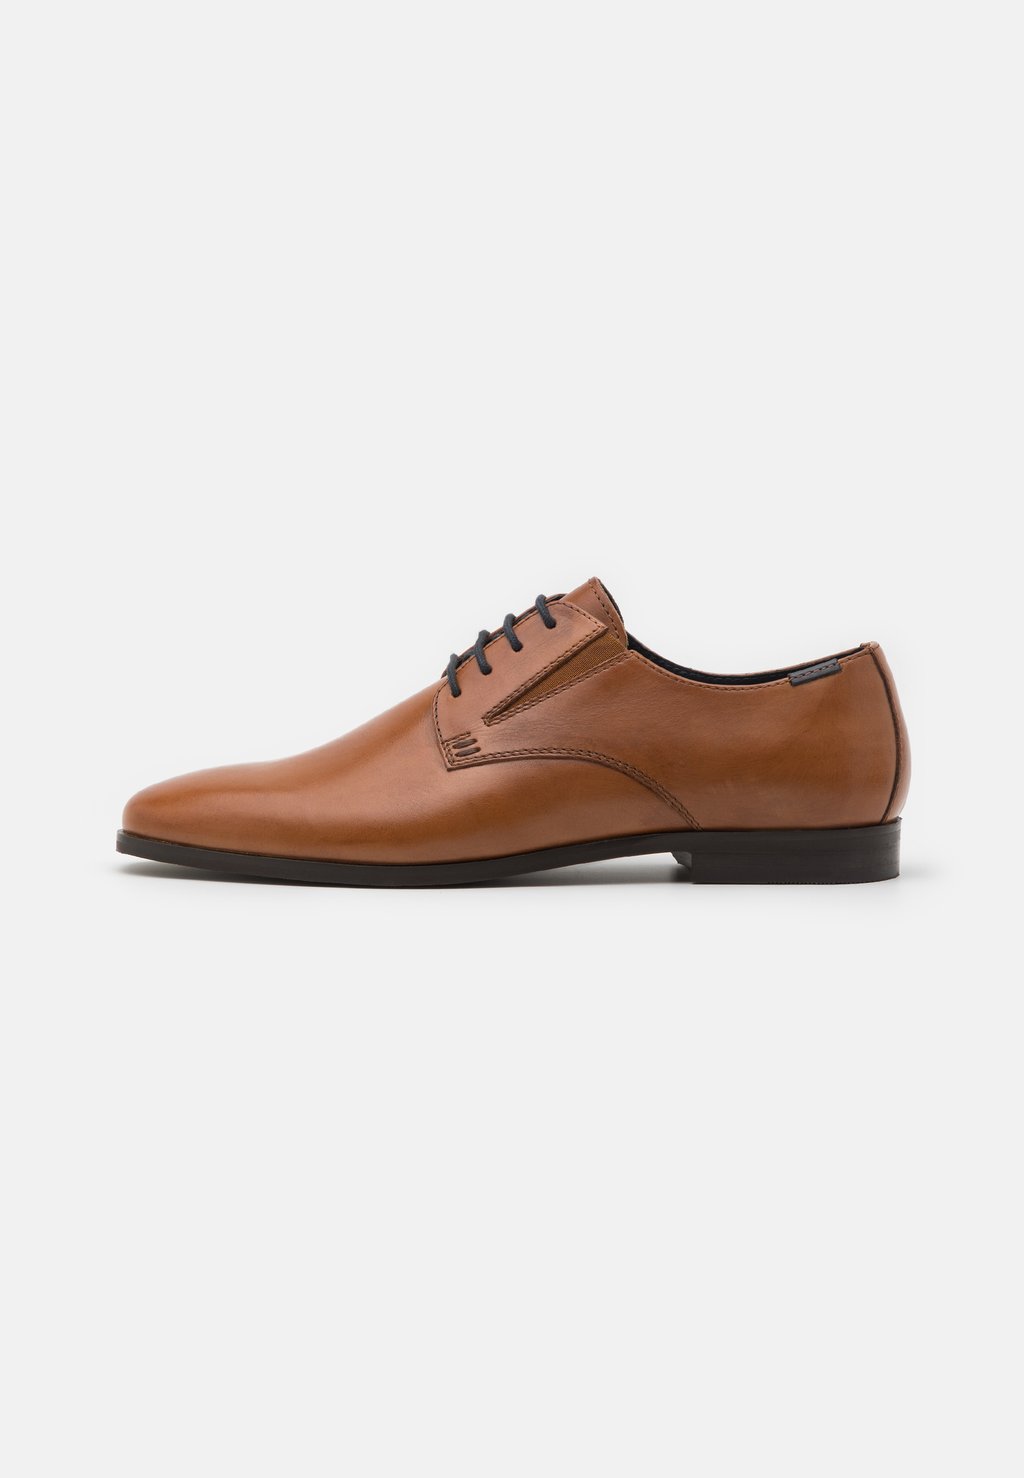 Элегантные туфли на шнуровке Leather Pier One, цвет cognac